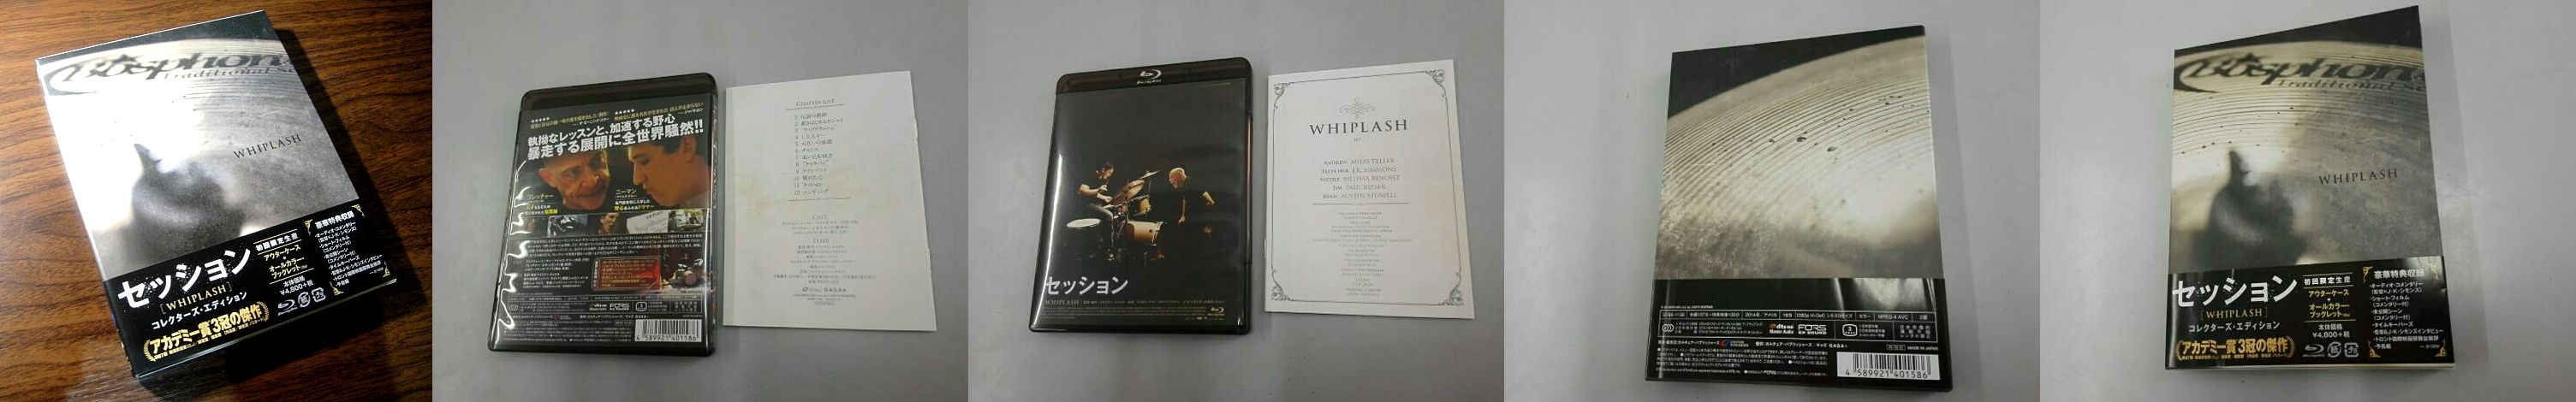 Whiplash Japan Slipcover